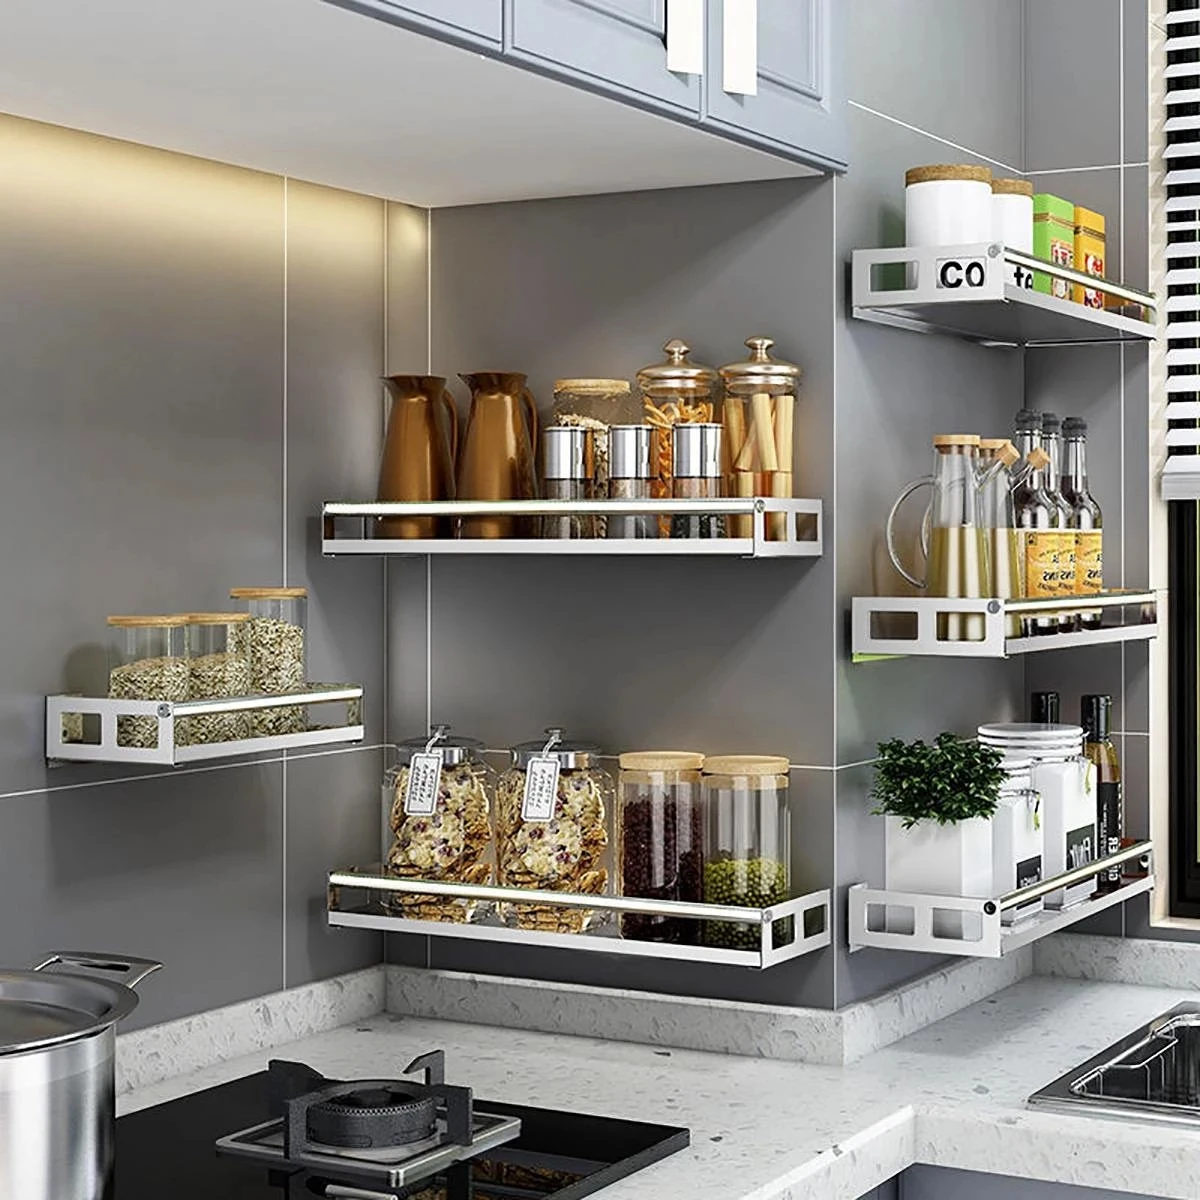 https://ae01.alicdn.com/kf/Sa8021c3f4fa54381b96a0a420830efb0h/Modern-Nordic-Style-Kitchen-Organizer-Wall-Mount-Bracket-Storage-Rack-Spice-Jar-Rack-Cabinet-Shelf-Supplies.jpg